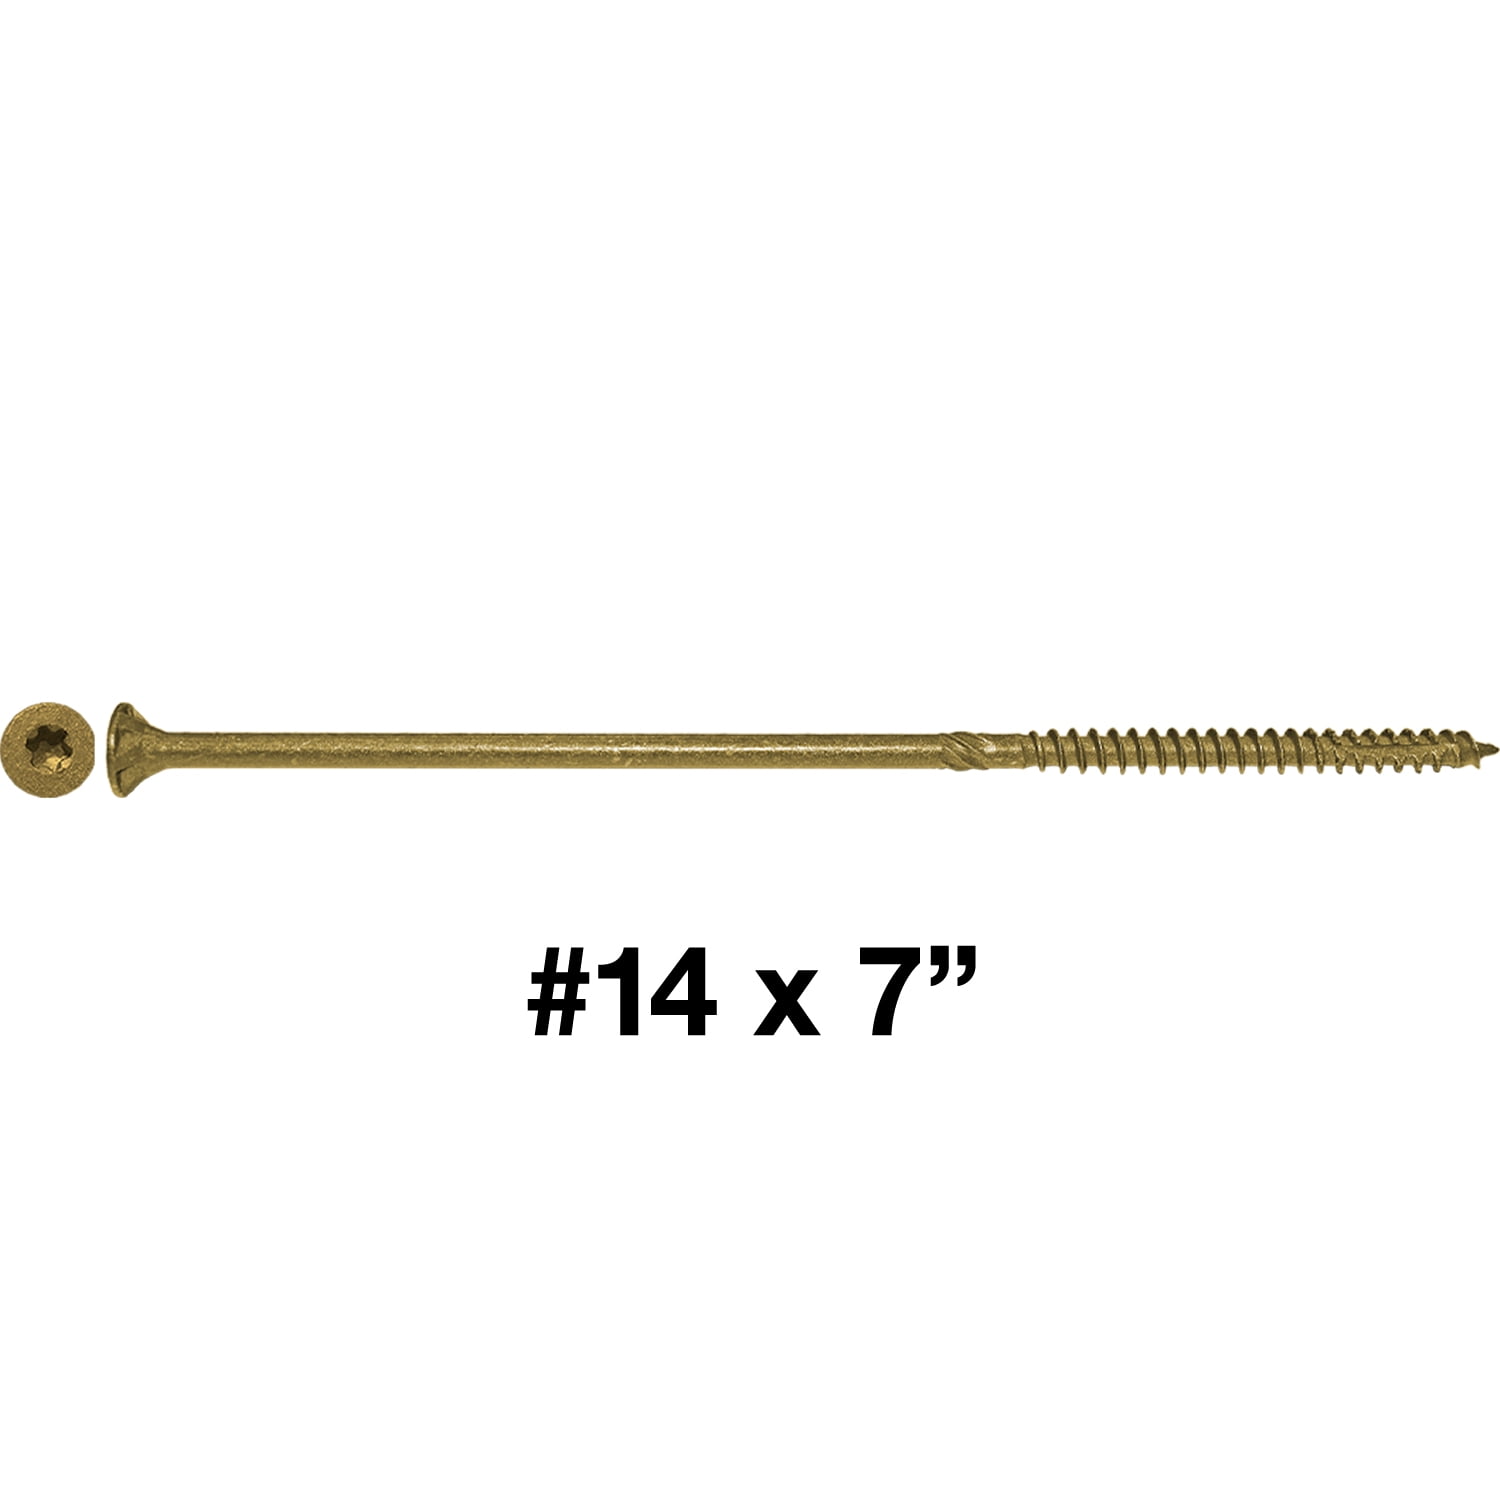 5 POUNDS - 430 Approx. Screw Count Multipurpose Torx/Star Drive Wood Screws #9 x 2 3/4 Gold Star Wood Screw Torx/Star Drive Head